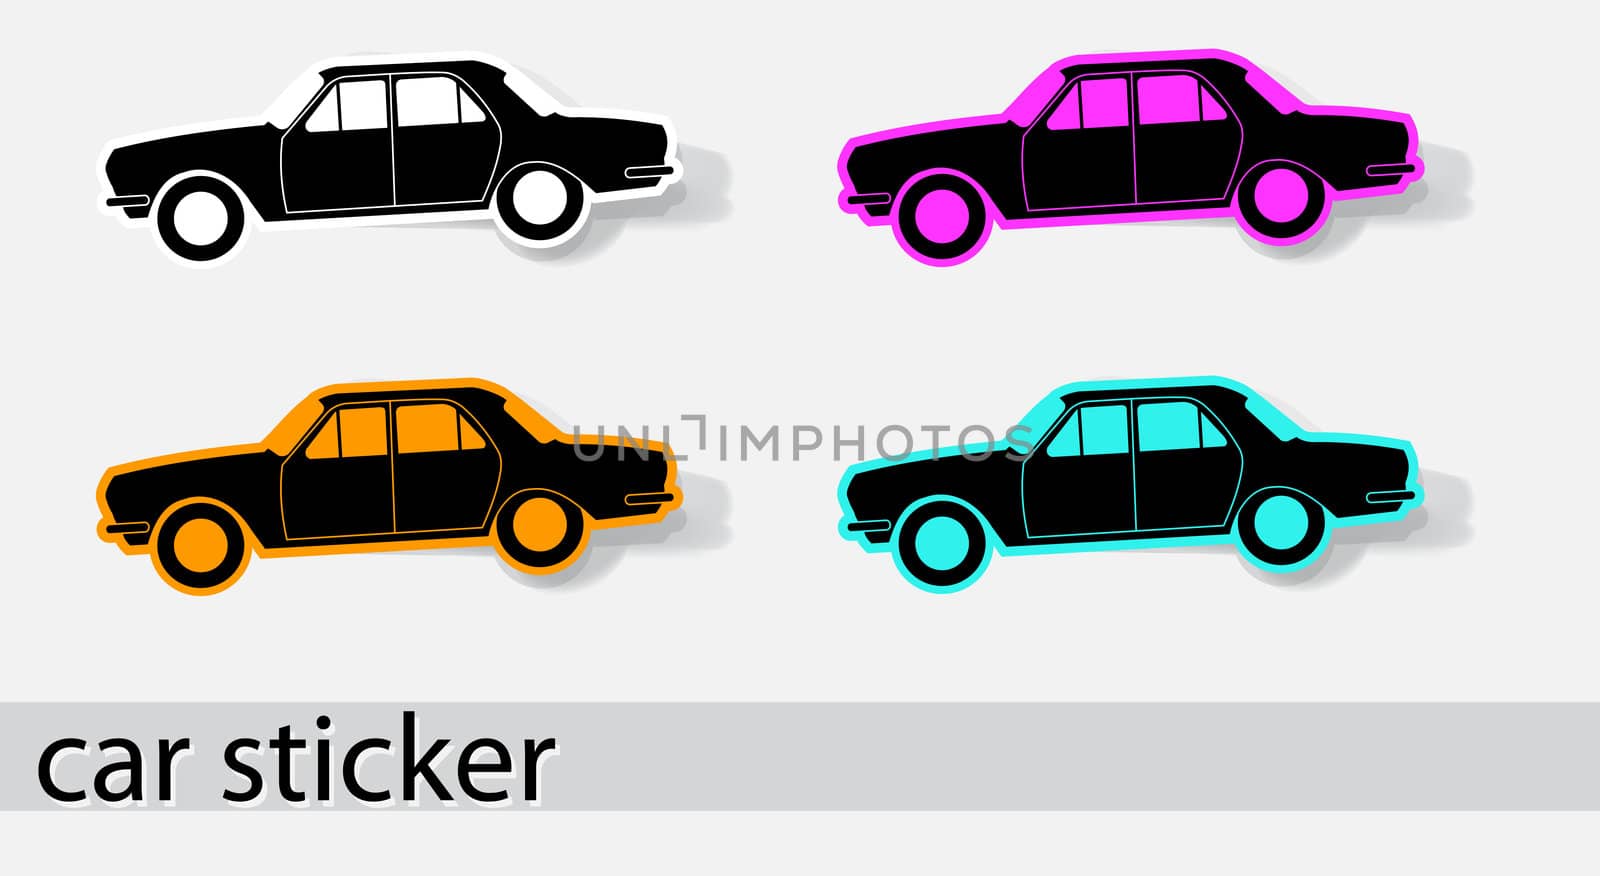 Car stiker icons. by smoki